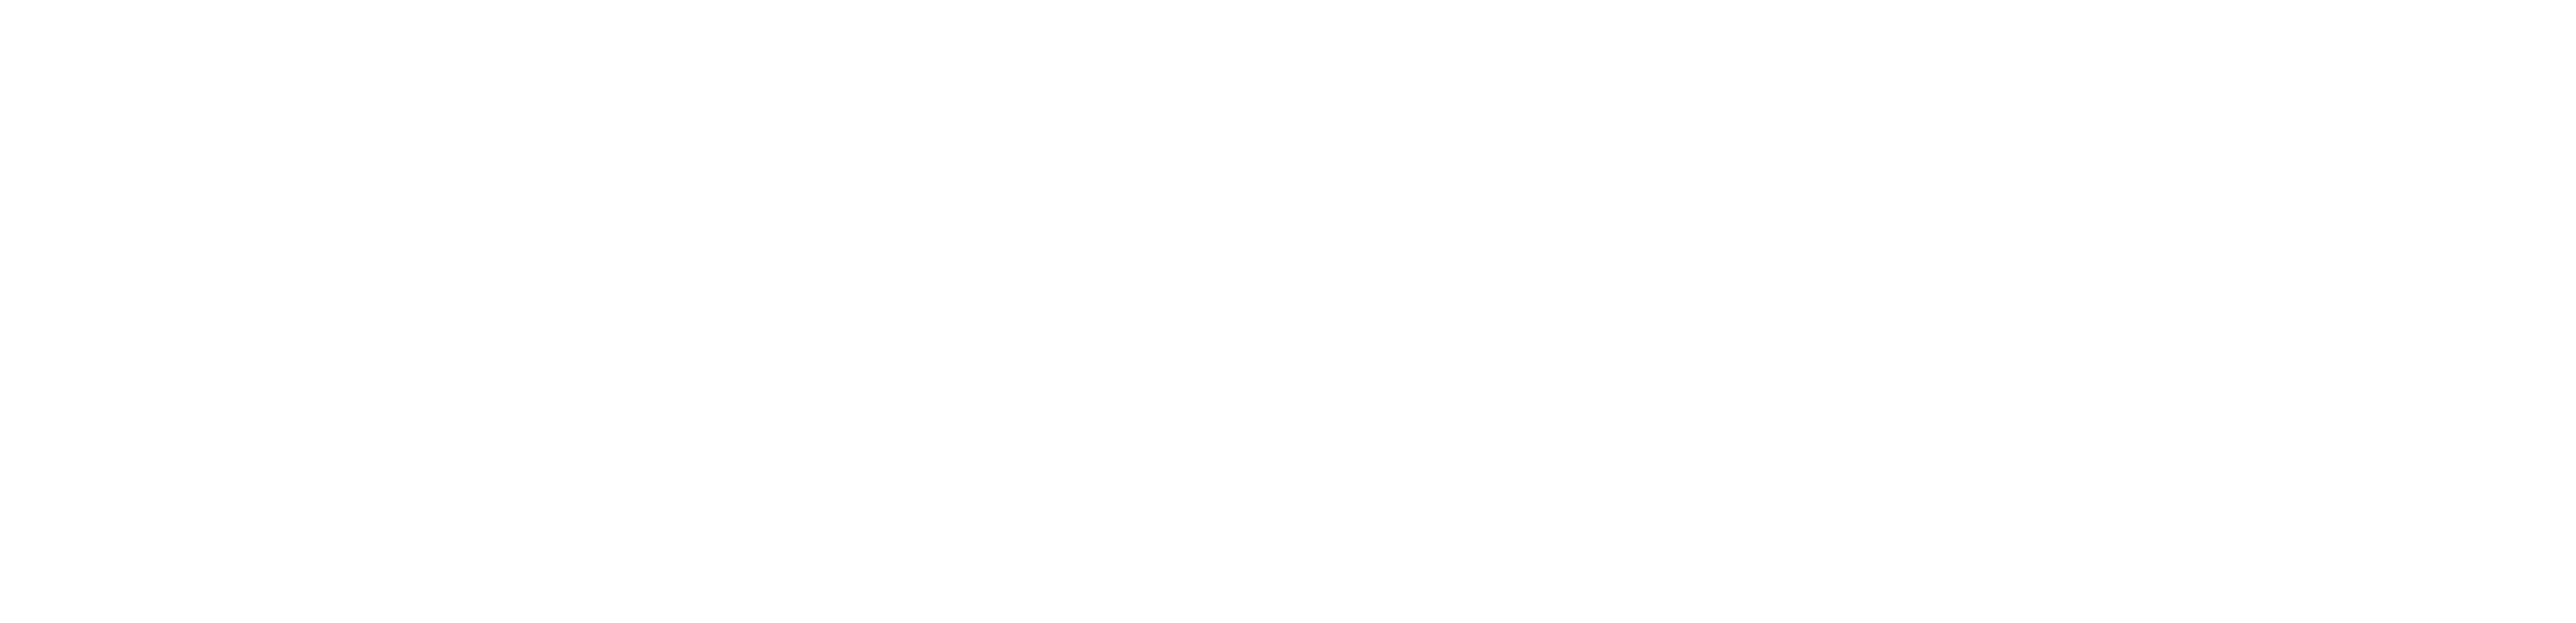 Millennium Fire Protection Corporation